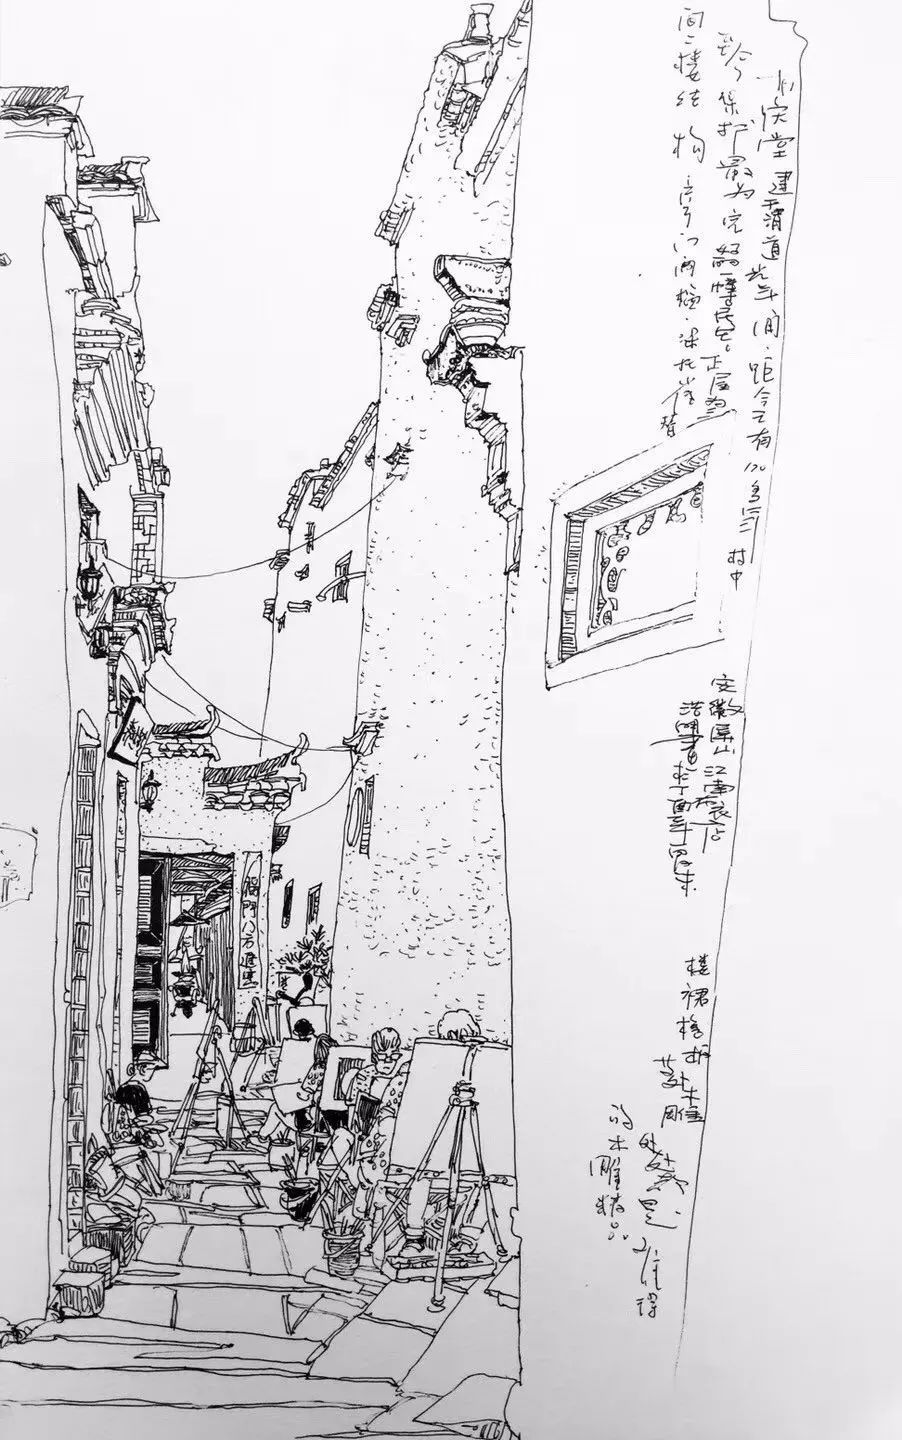 日本画师渡部政人的城镇风景速写